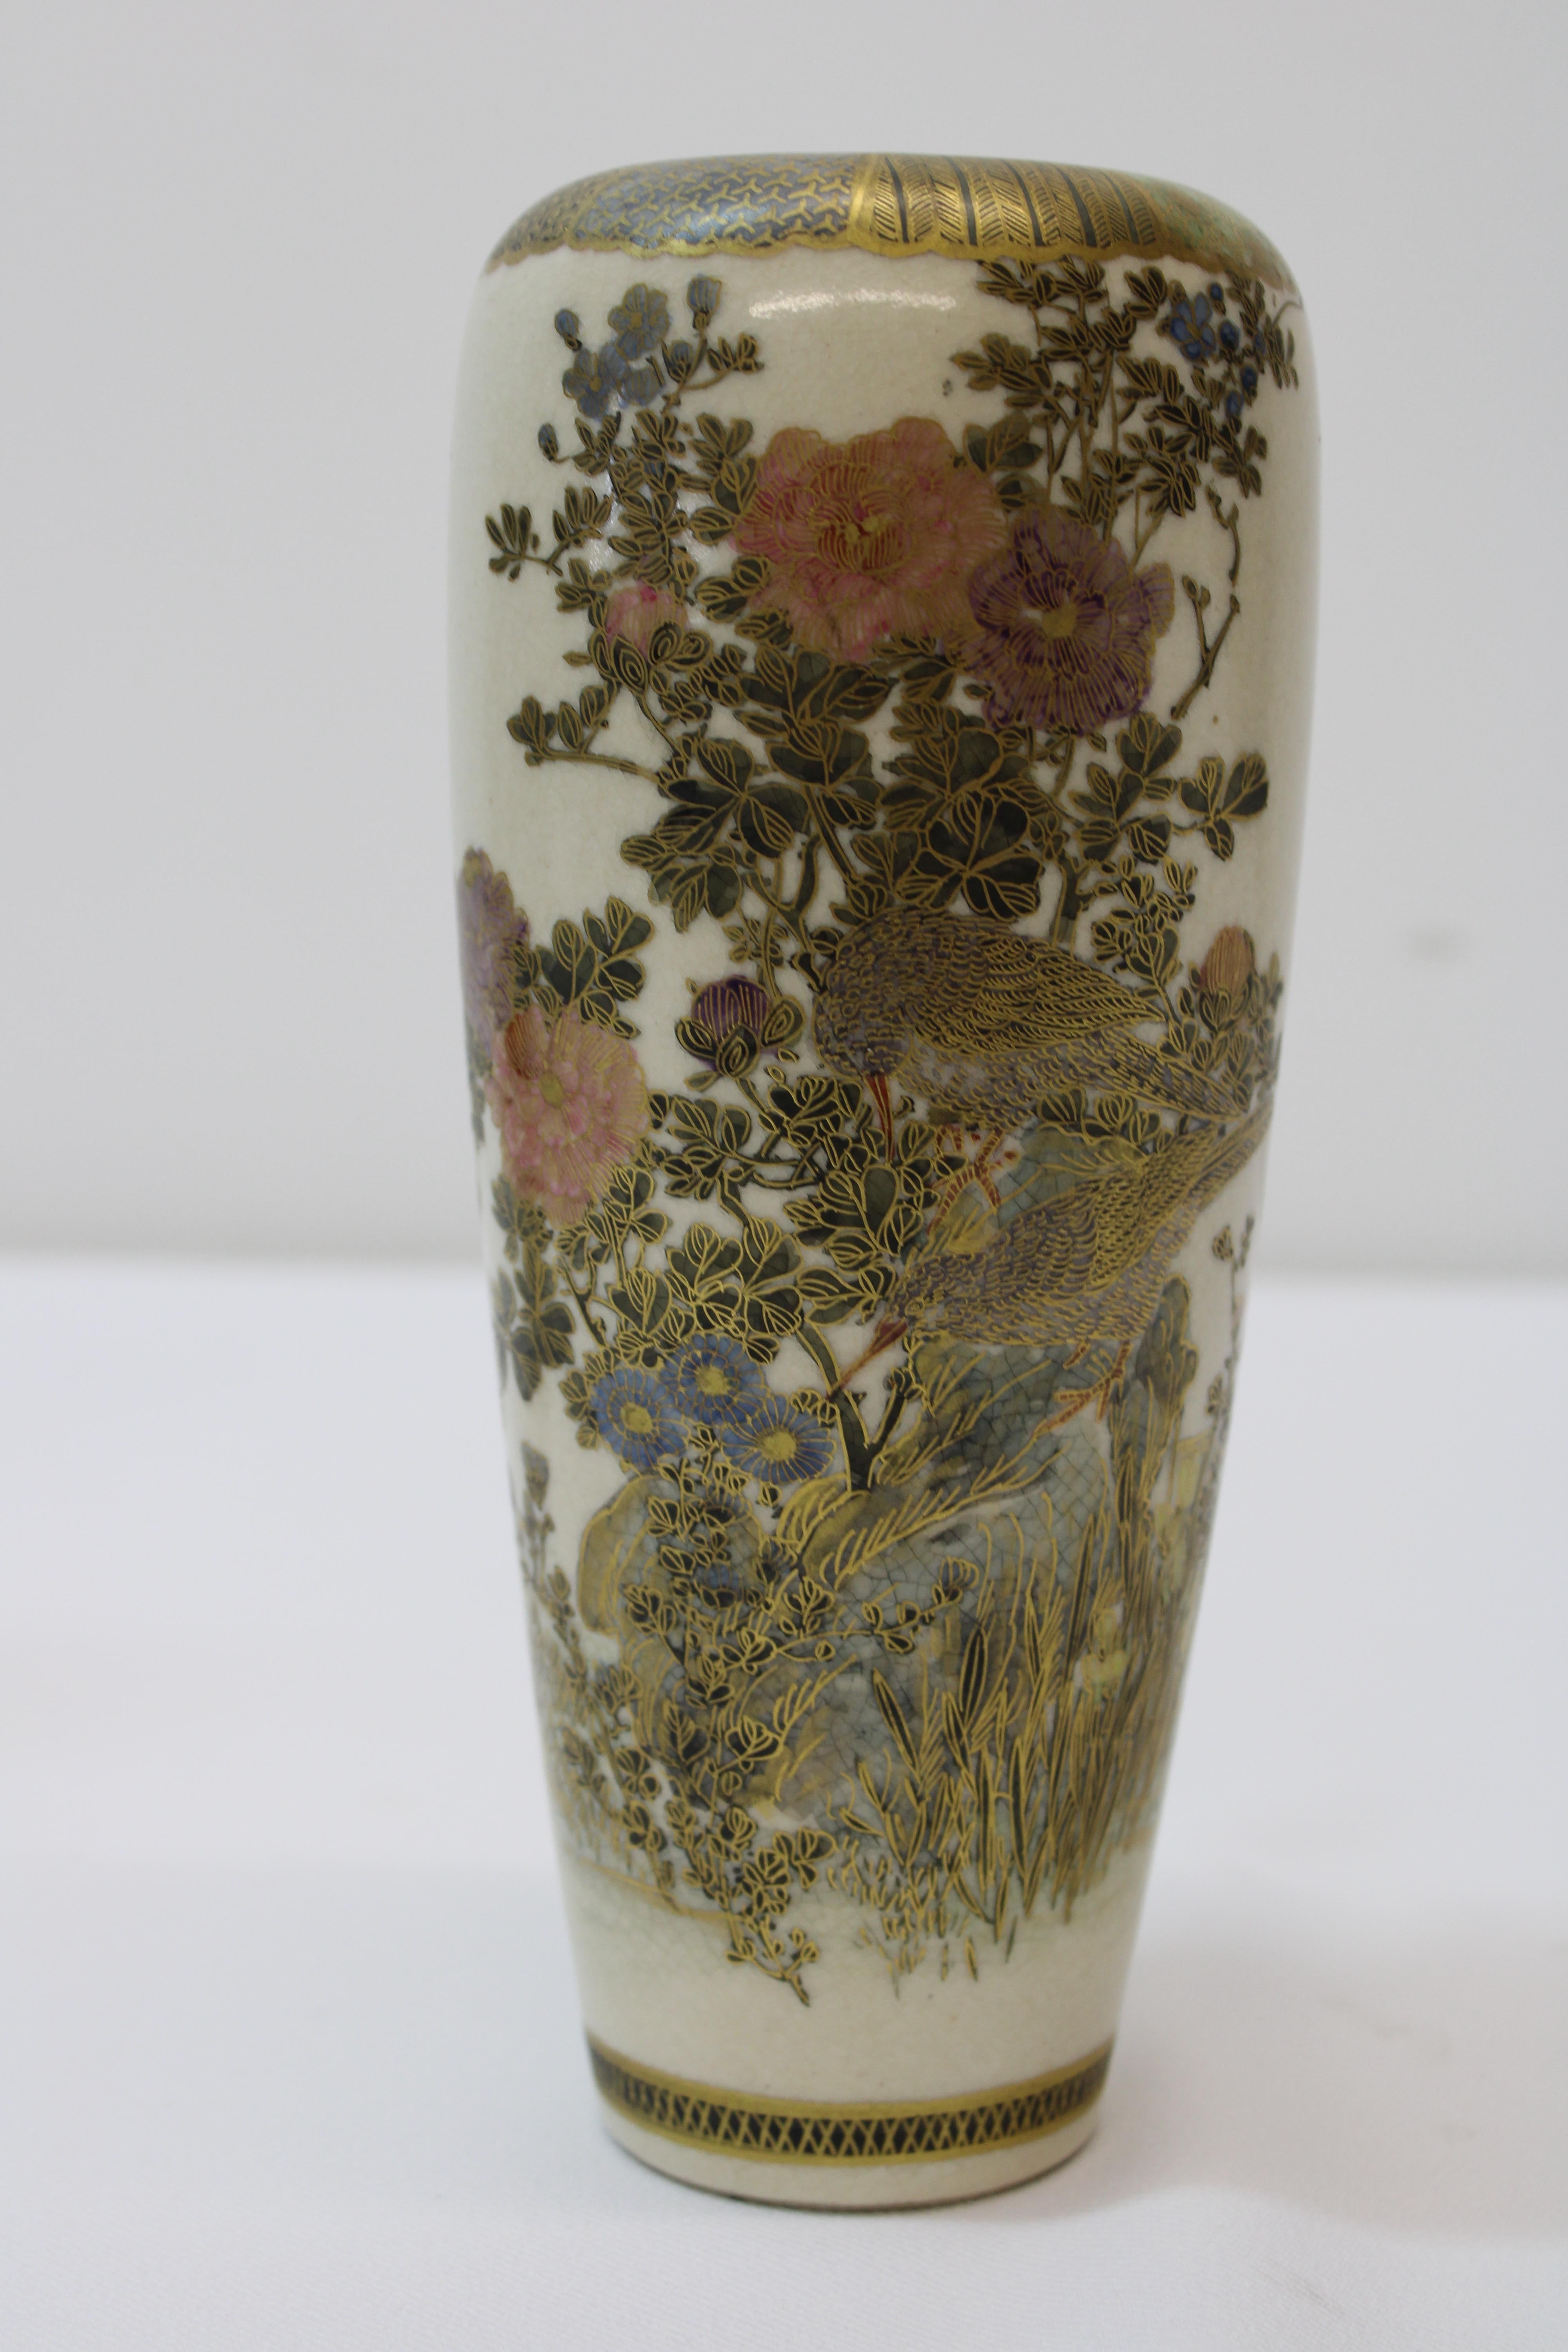 C. magnifiques vases satsuma du 19ème siècle.
Peint à la main, doré avec des fleurs et des oiseaux (signé).